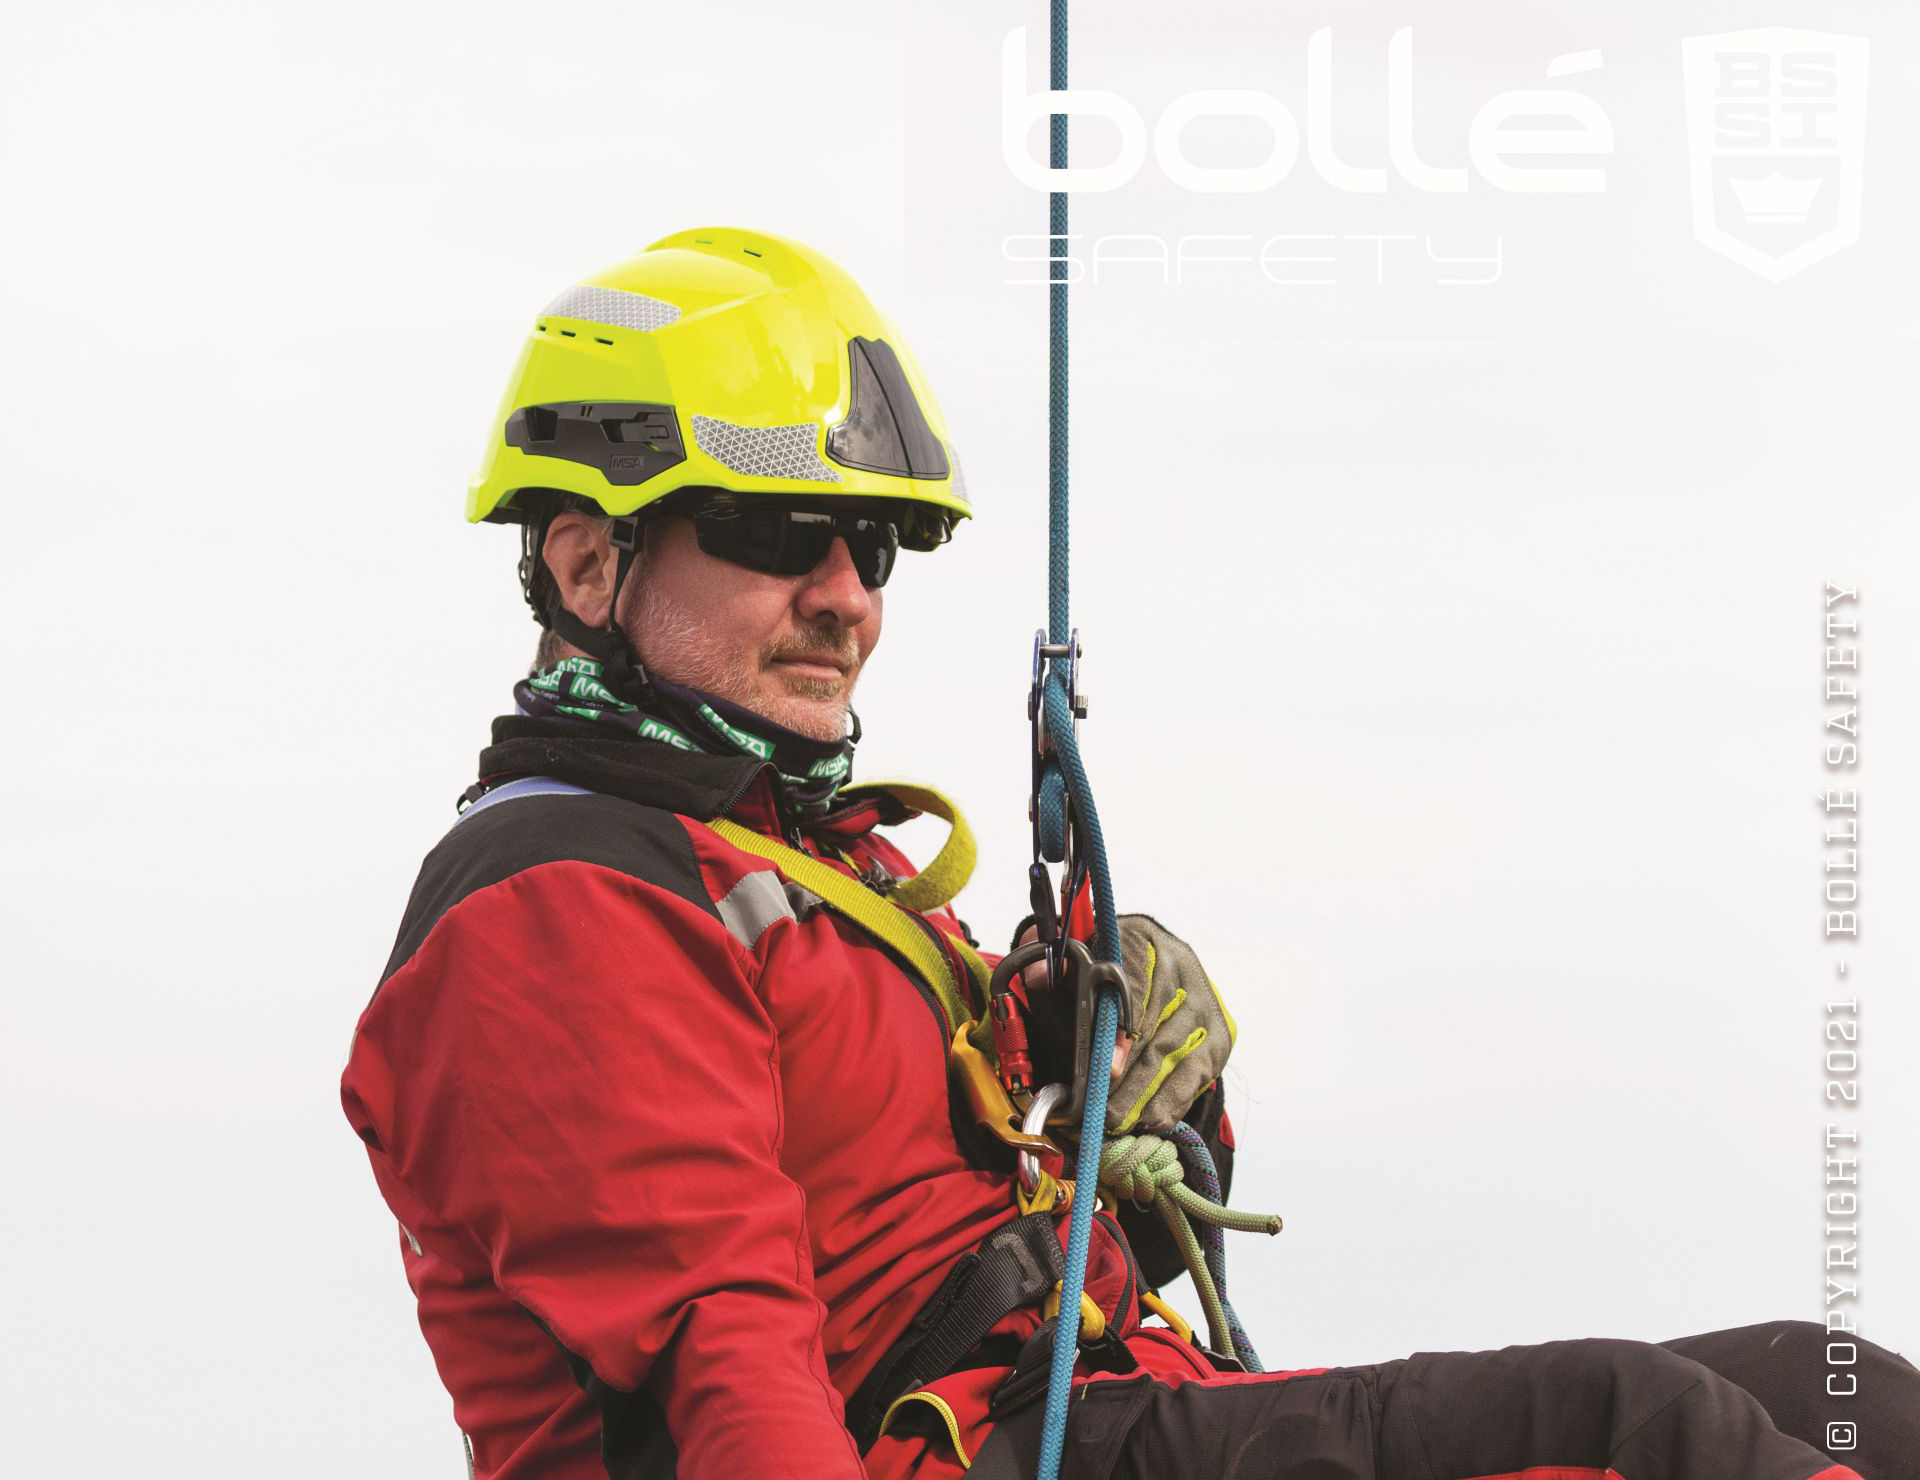 Neues für taktische Märkte: Bollé Safety kreiert neue Schutzbrillen für Einsatzkräfte